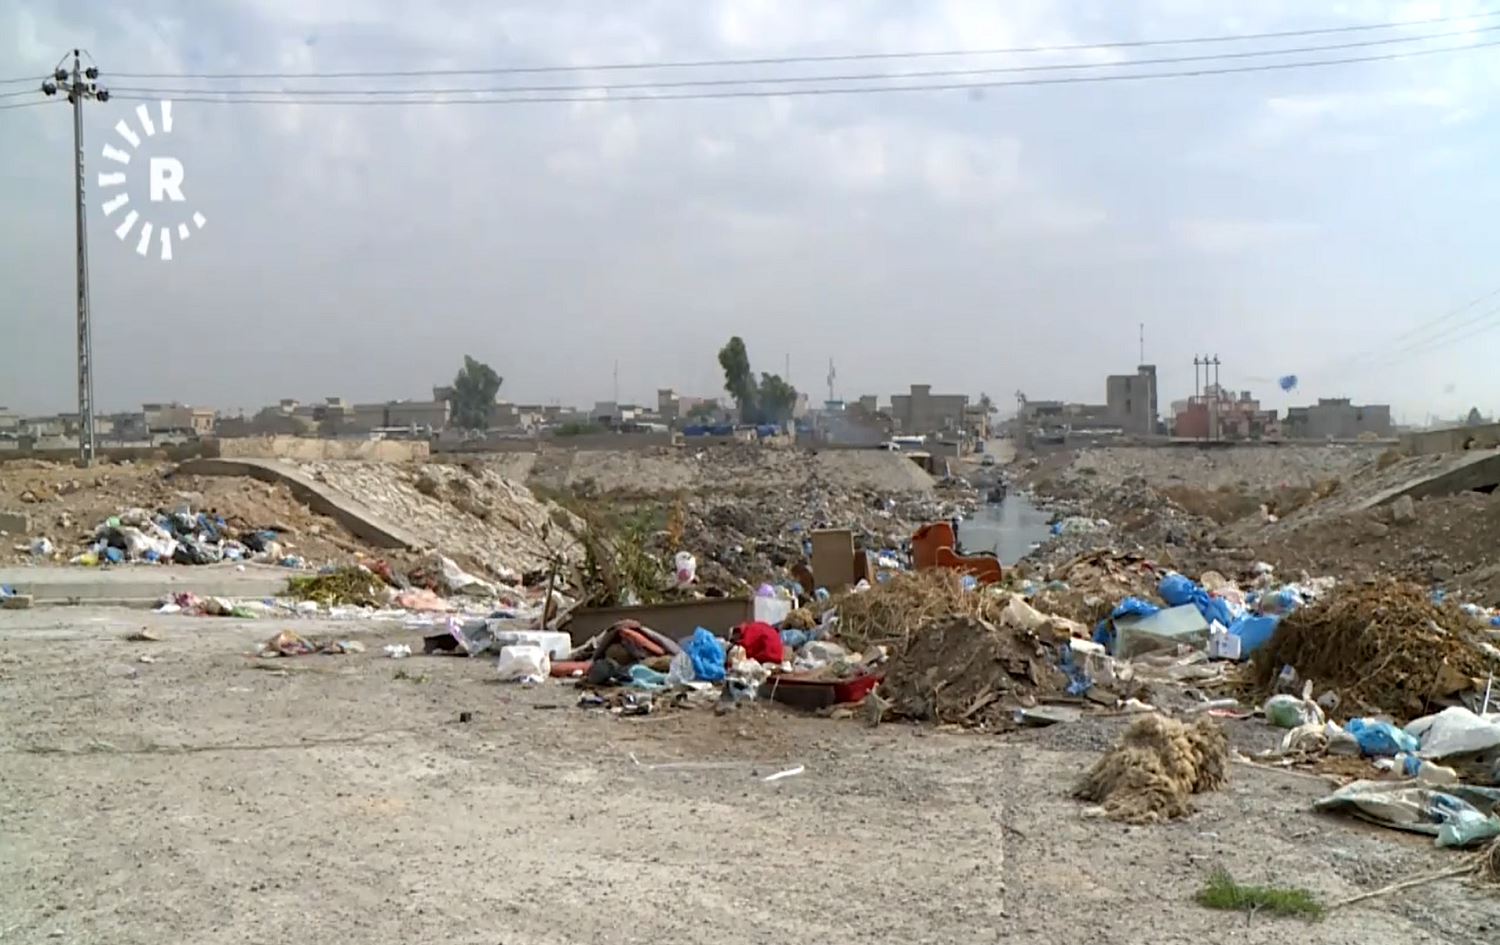 Pollution, trash pile-ups prompt health concerns in Kirkuk